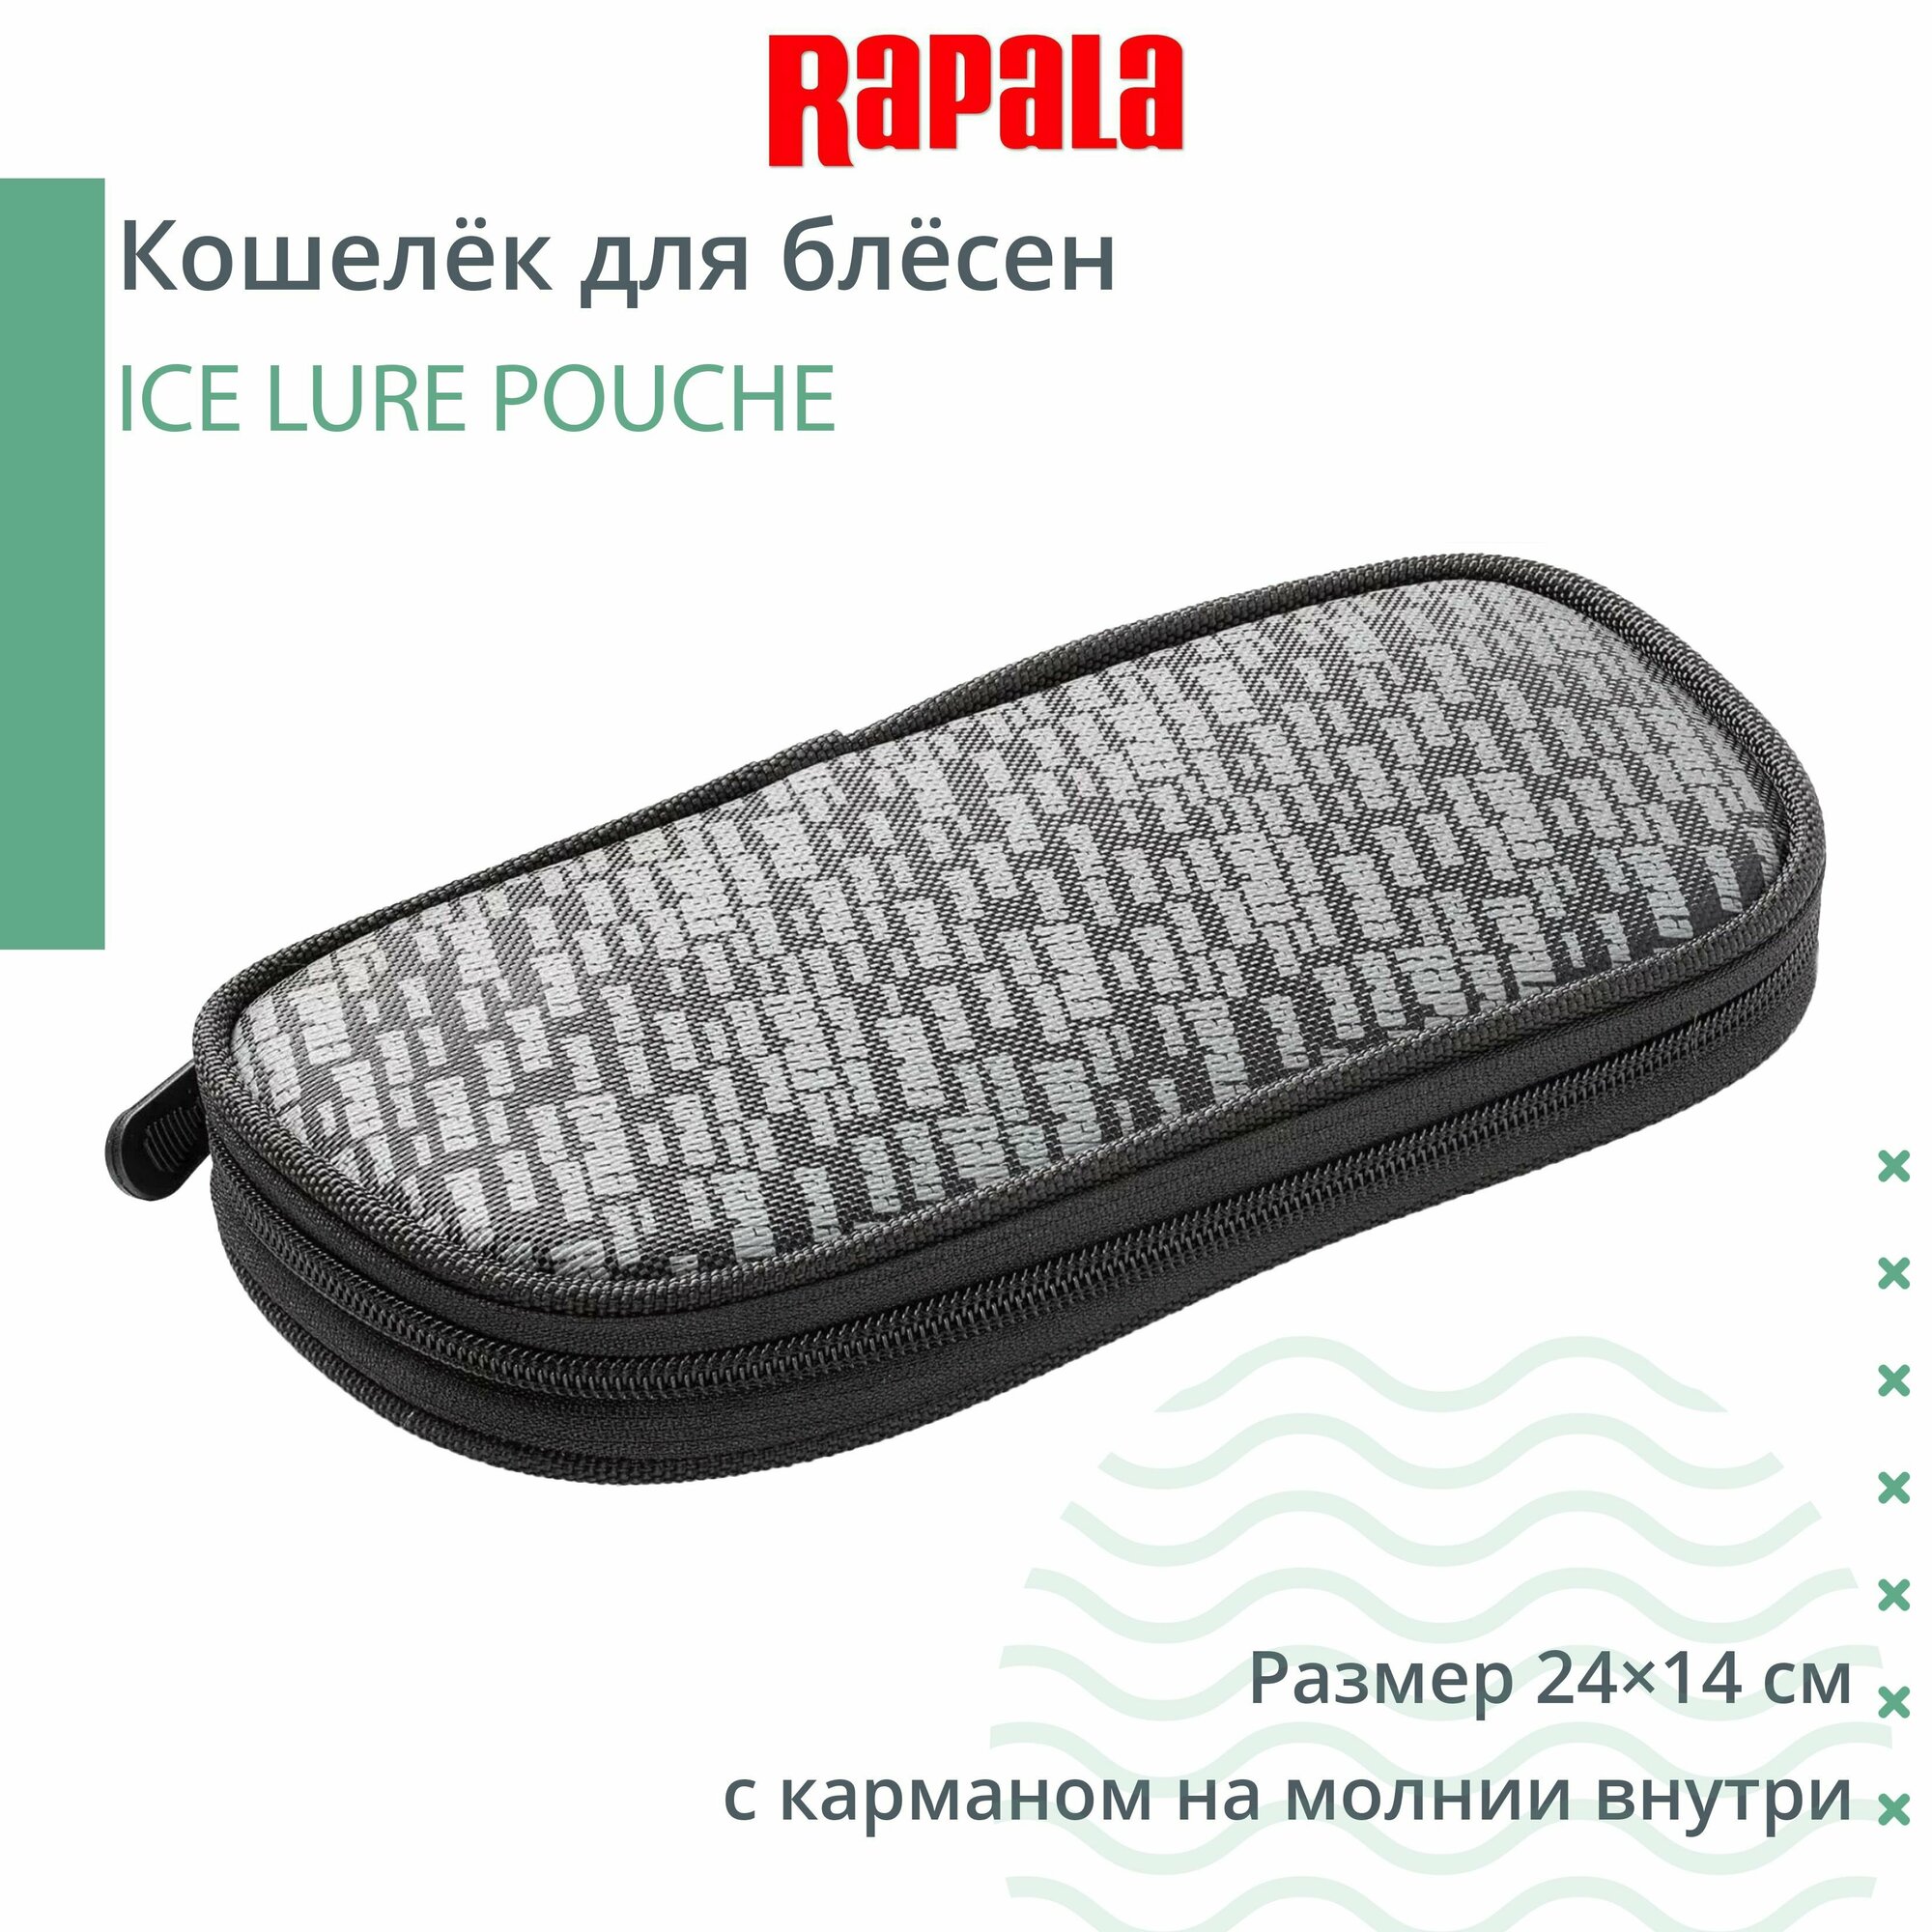 Кошелёк для блёсен RAPALA ICE LURE POUCHE большой (с карманом на молнии внутри)